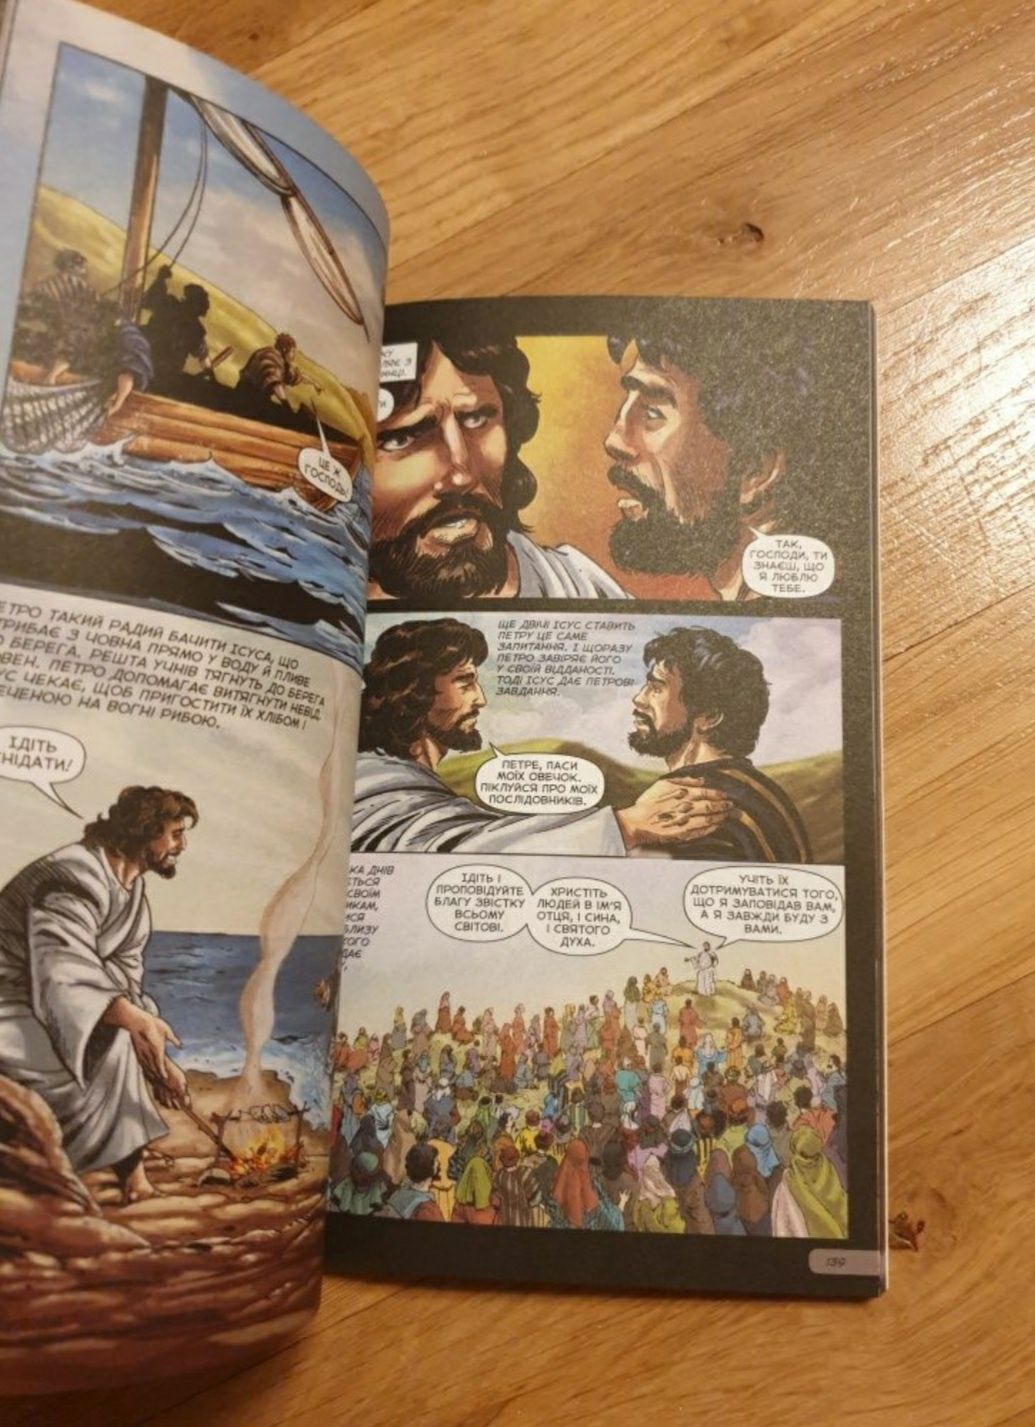 Biblia dla dzieci komiks jezyk ukraiński